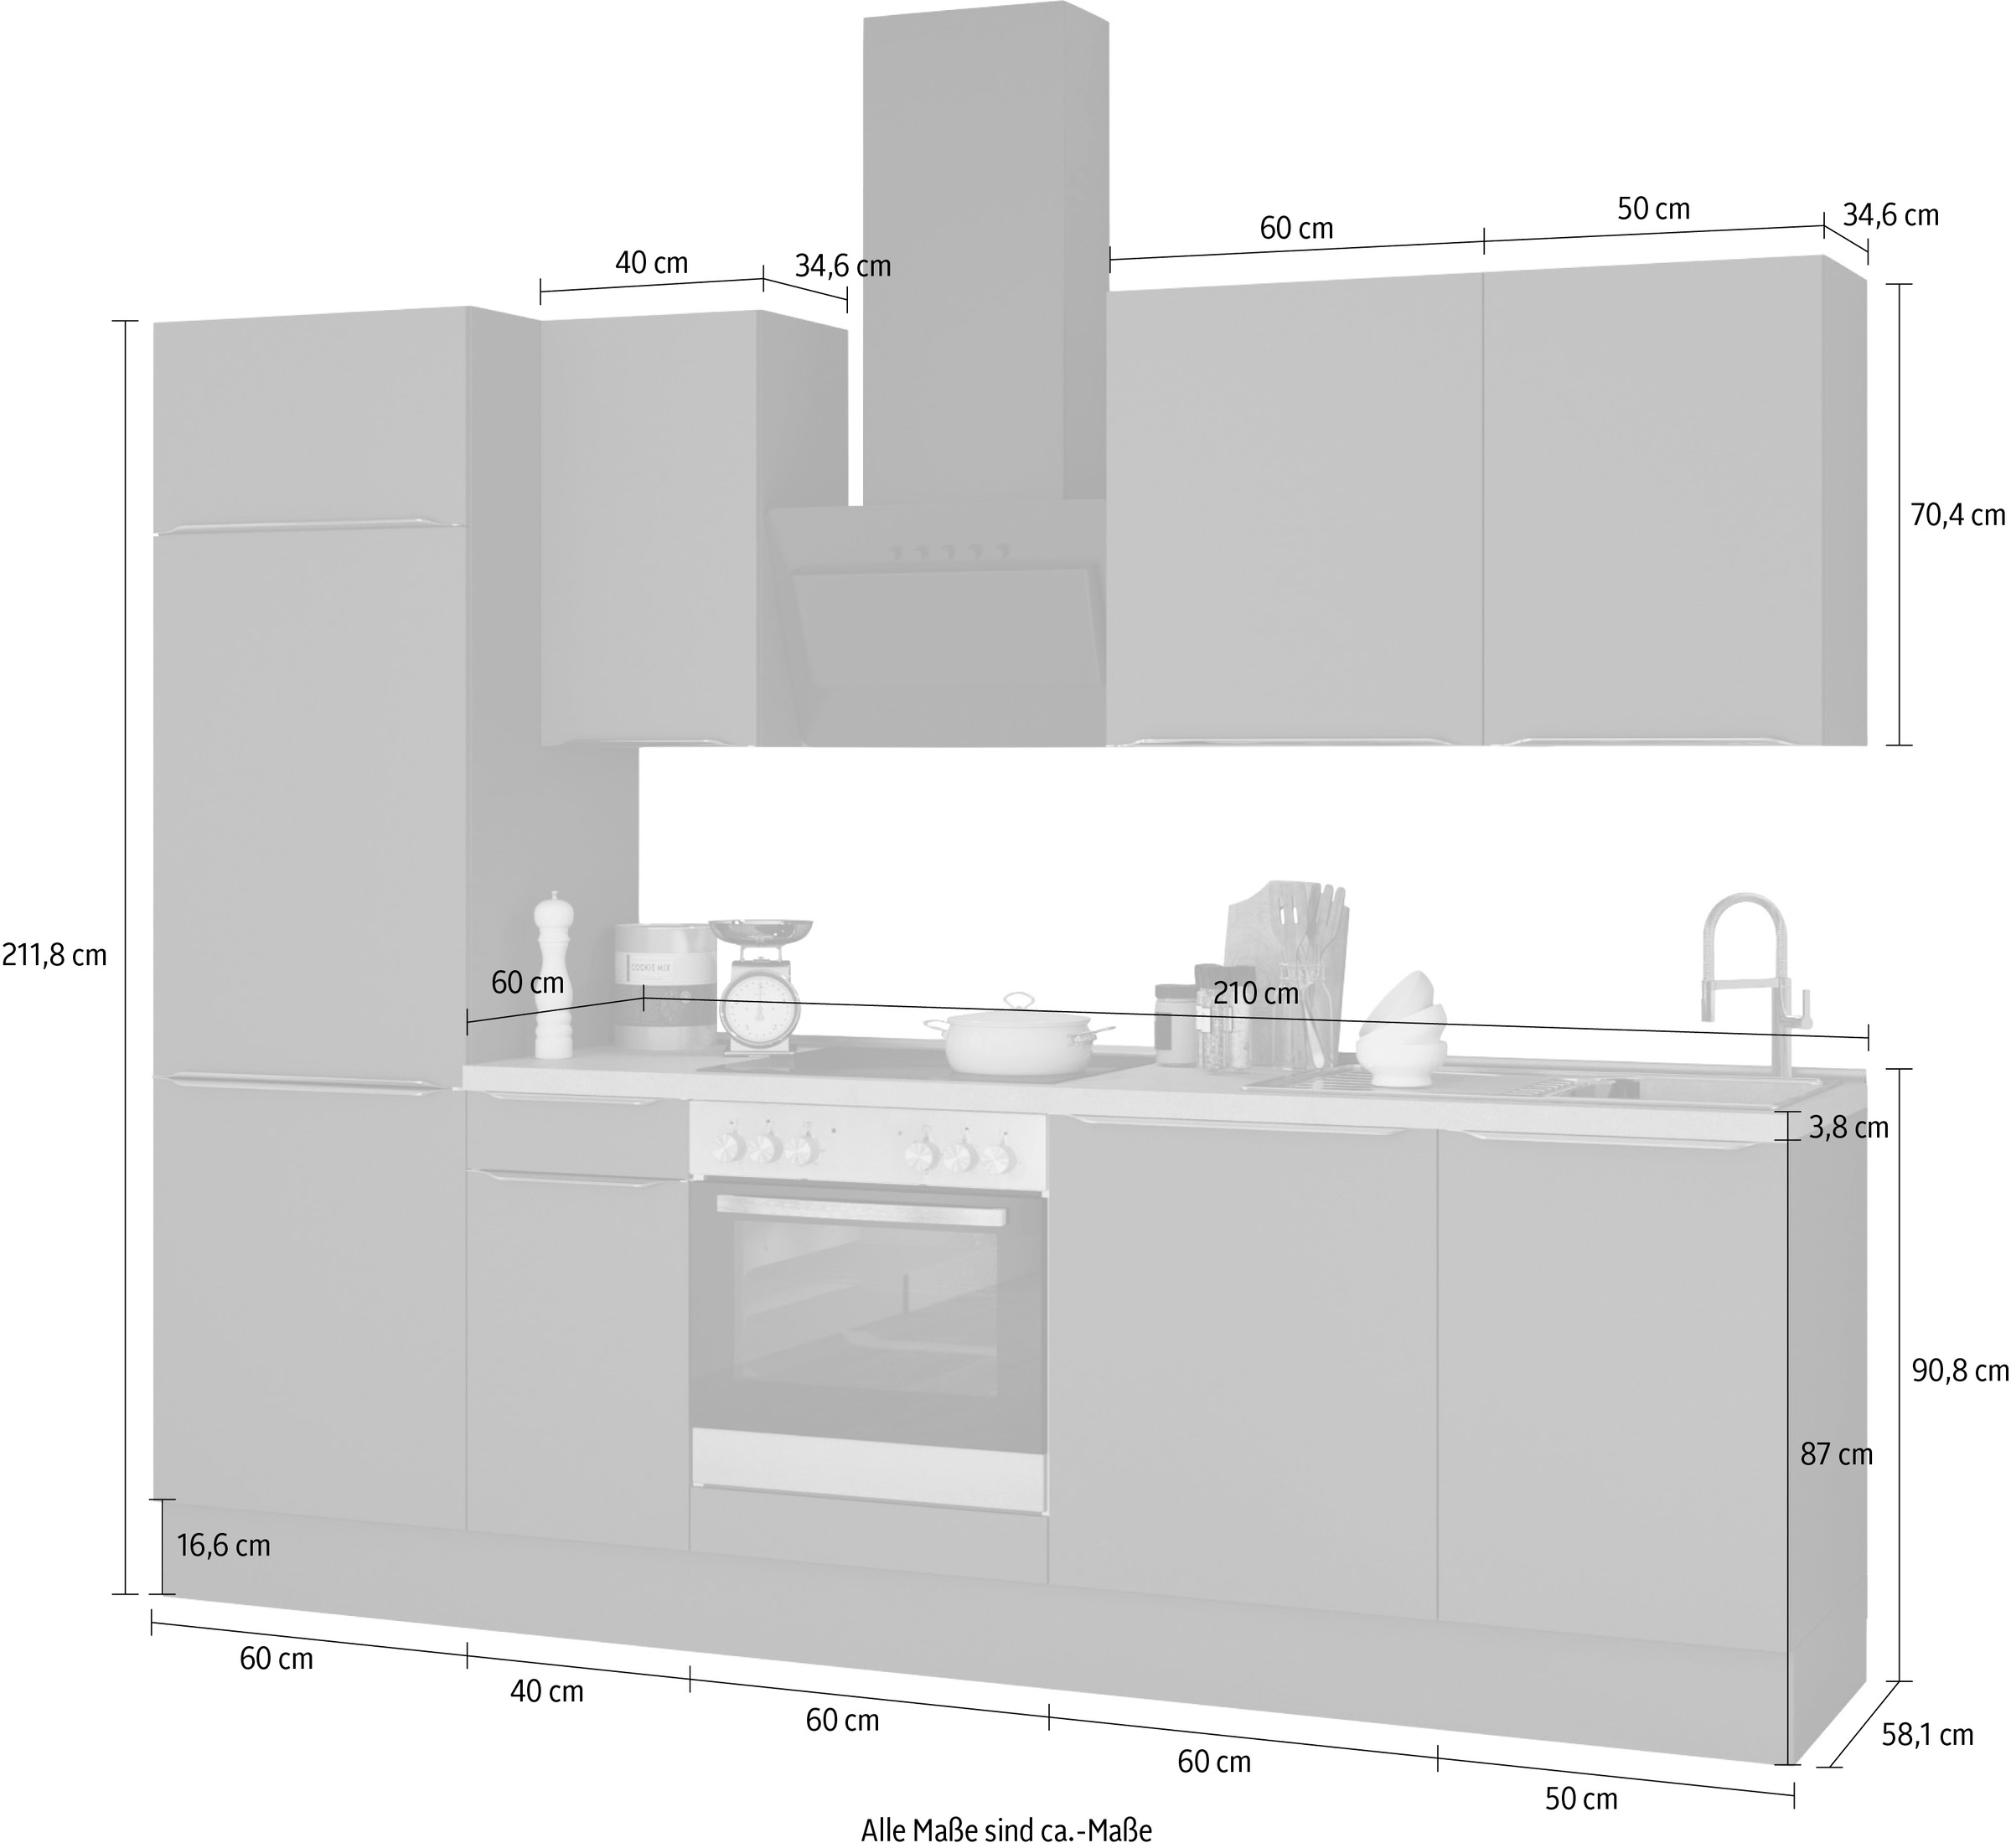 OPTIFIT Küchenzeile »Aken«, ohne E-Geräte, Breite 270 cm auf Raten kaufen